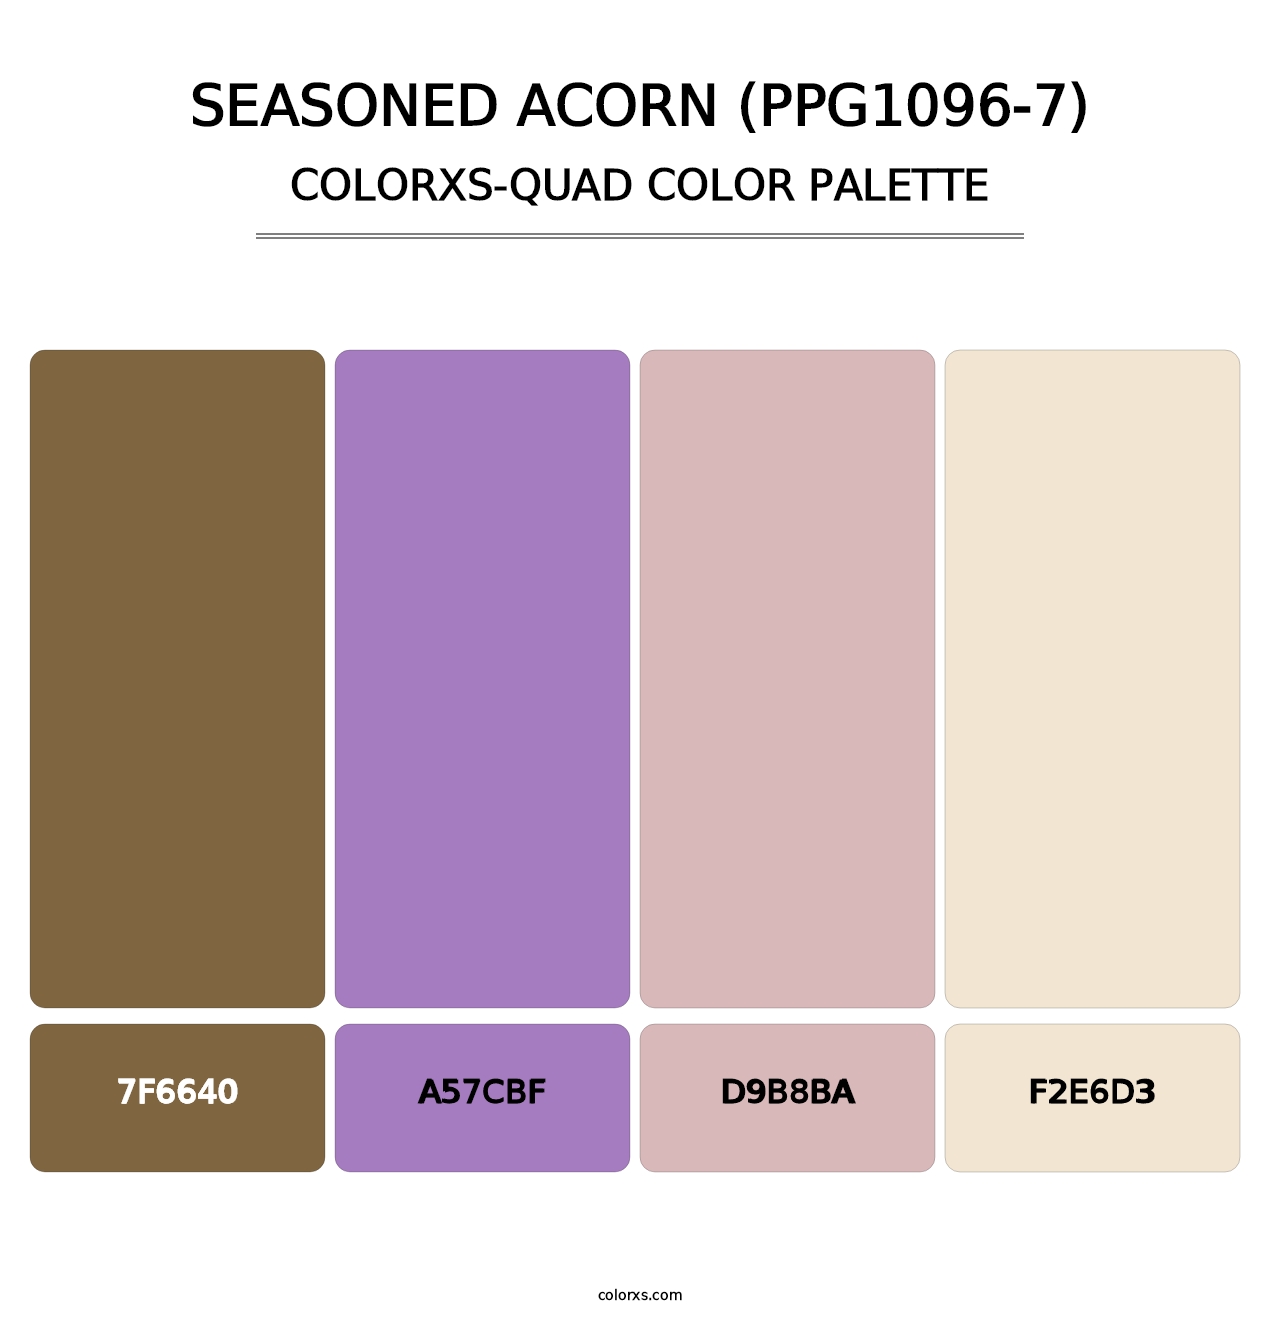 Seasoned Acorn (PPG1096-7) - Colorxs Quad Palette